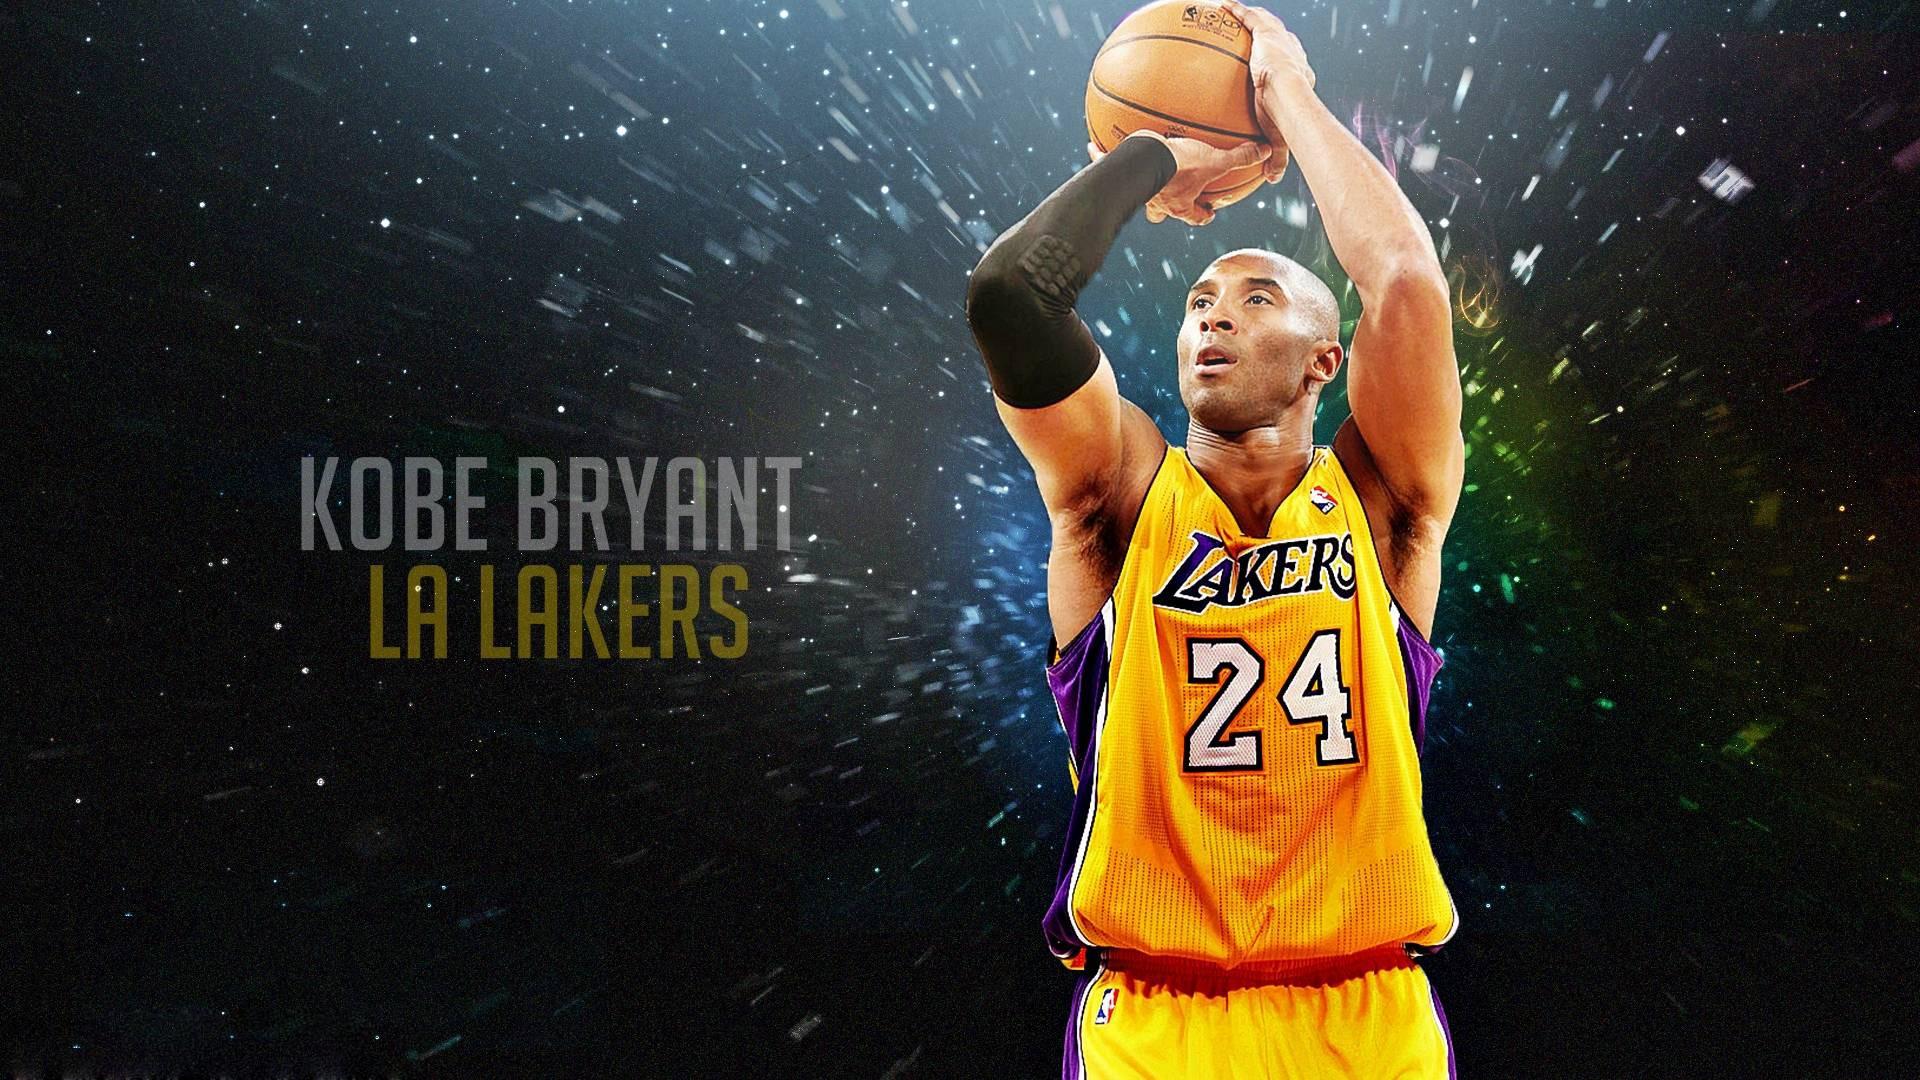 Free Kobe Bryant Wallpaper Basketball Desktop Image Free